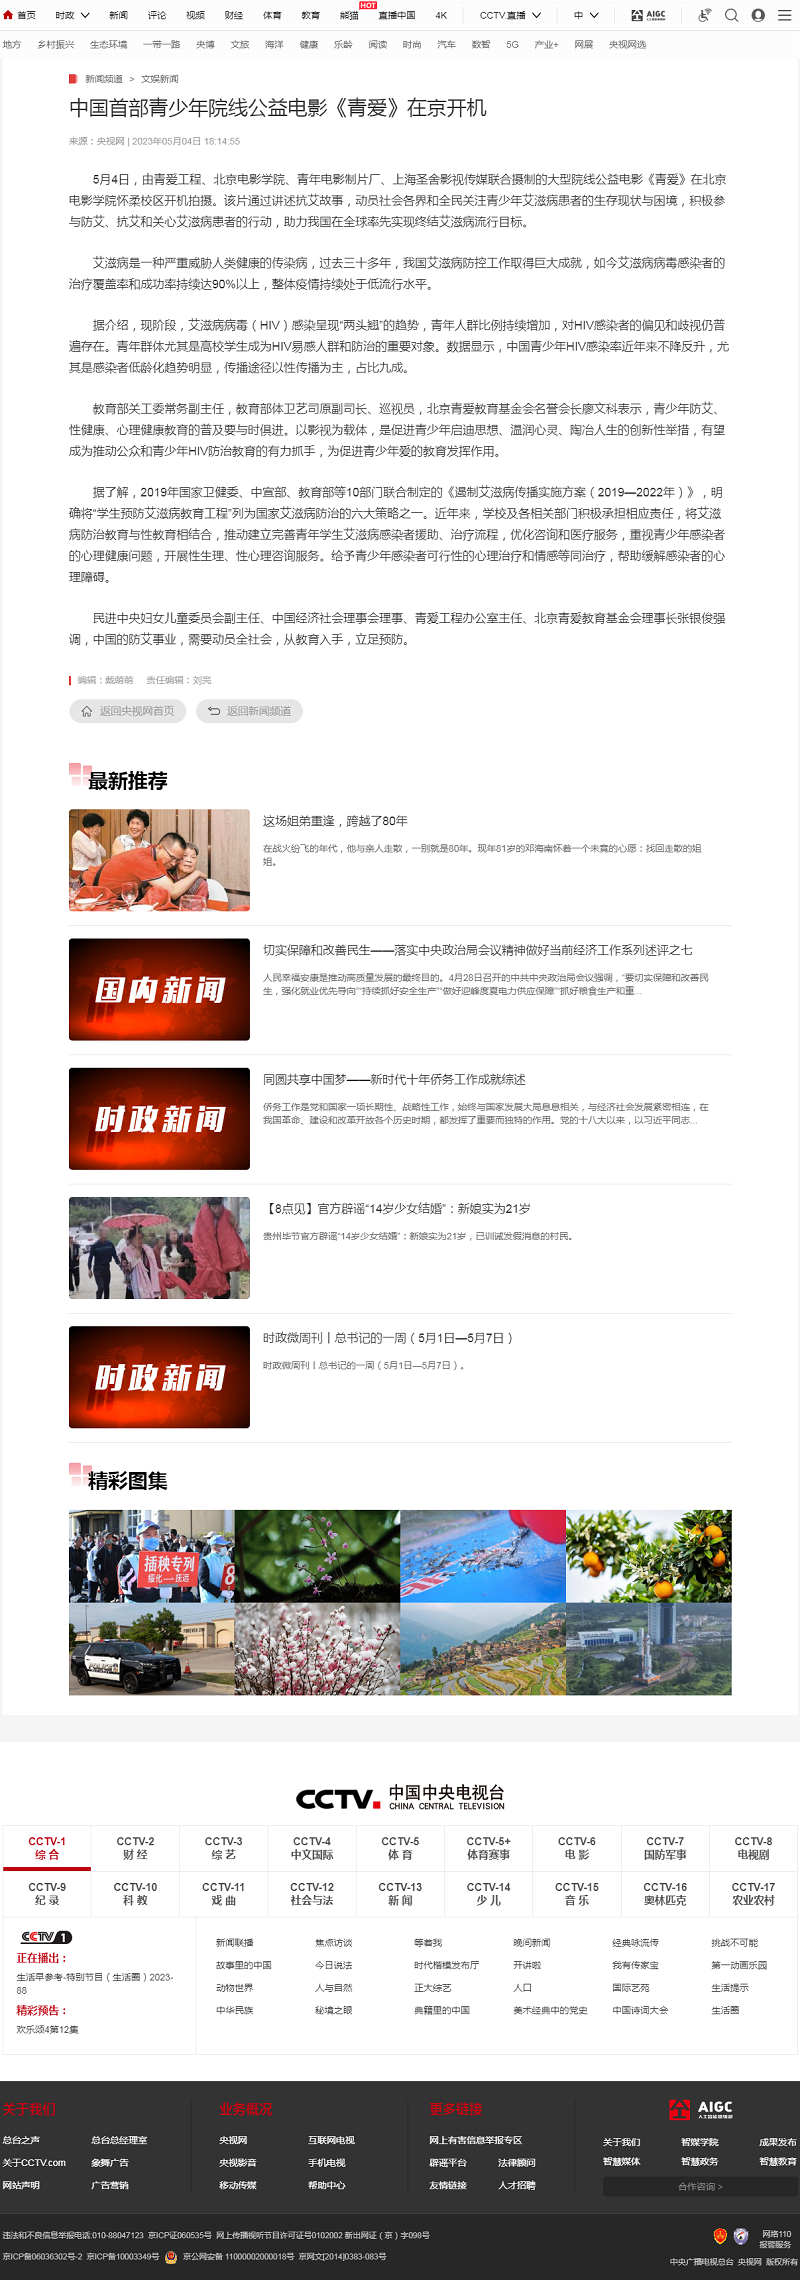 中国首部青少年院线公益电影《青爱》在京开机_新闻频道_央视网(cctv.com)